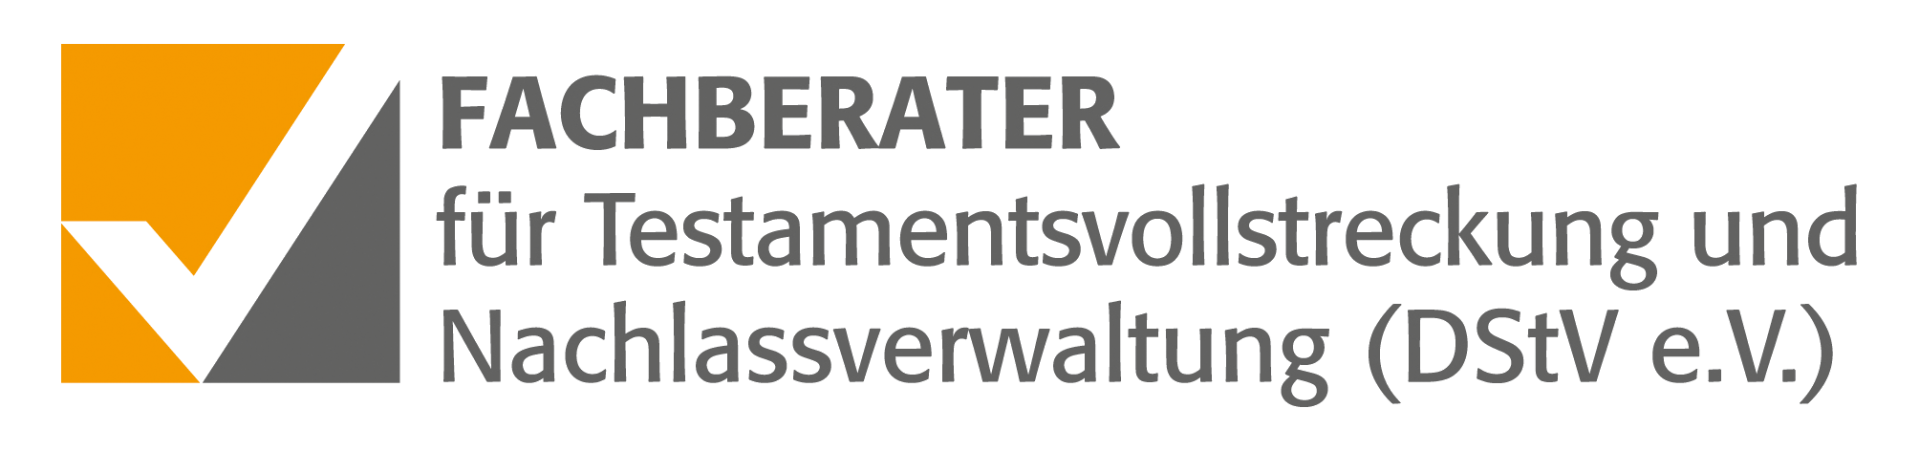 Fachberater für Testamentsvollstreckung und Nachlassverwaltung (DStV e.V.)